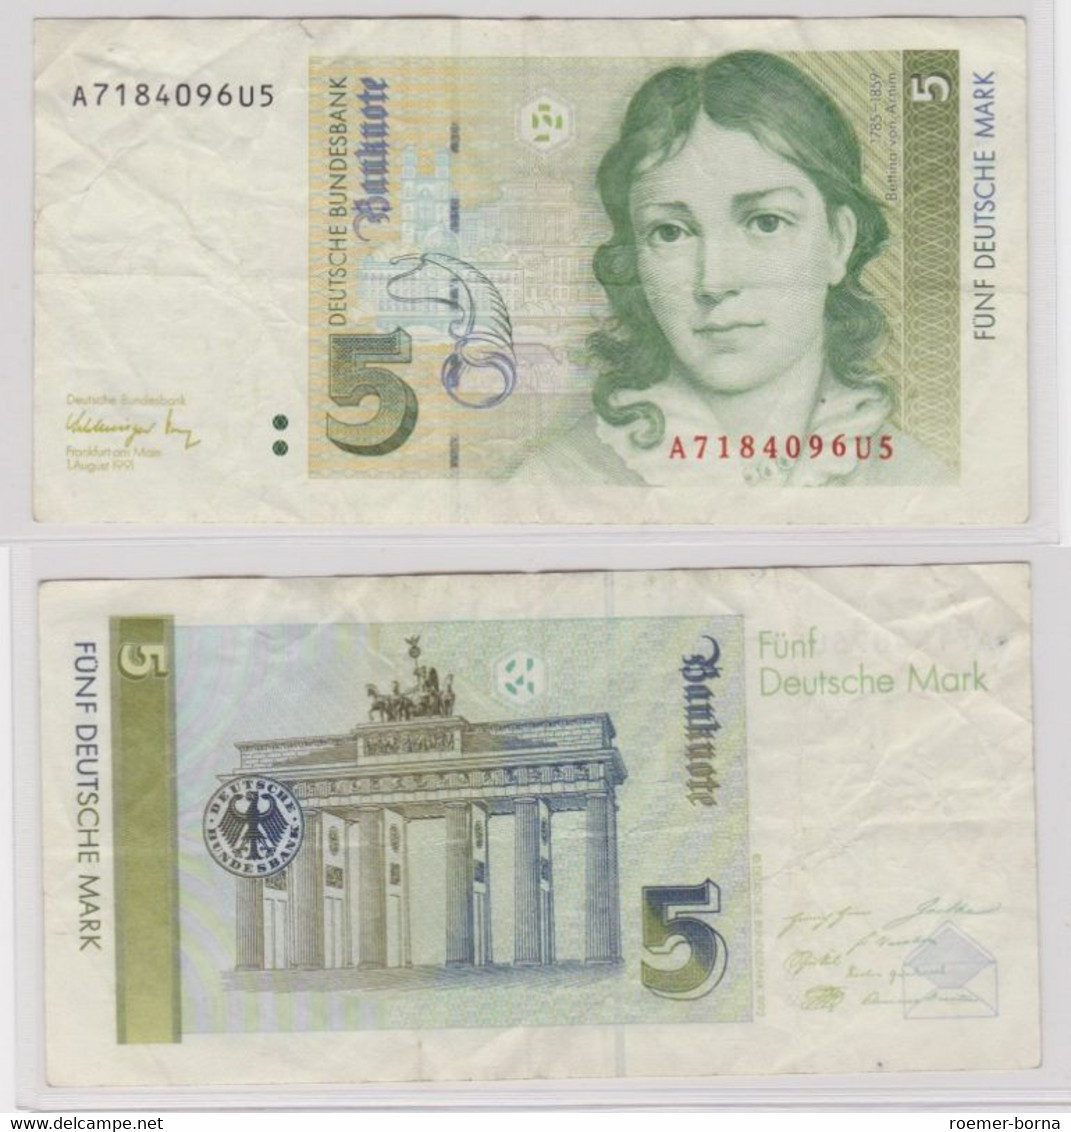 T144294 Banknote 5 DM Deutsche Mark Ro. 296b Schein 1.August 1991 KN A 7184096U5 - 5 DM